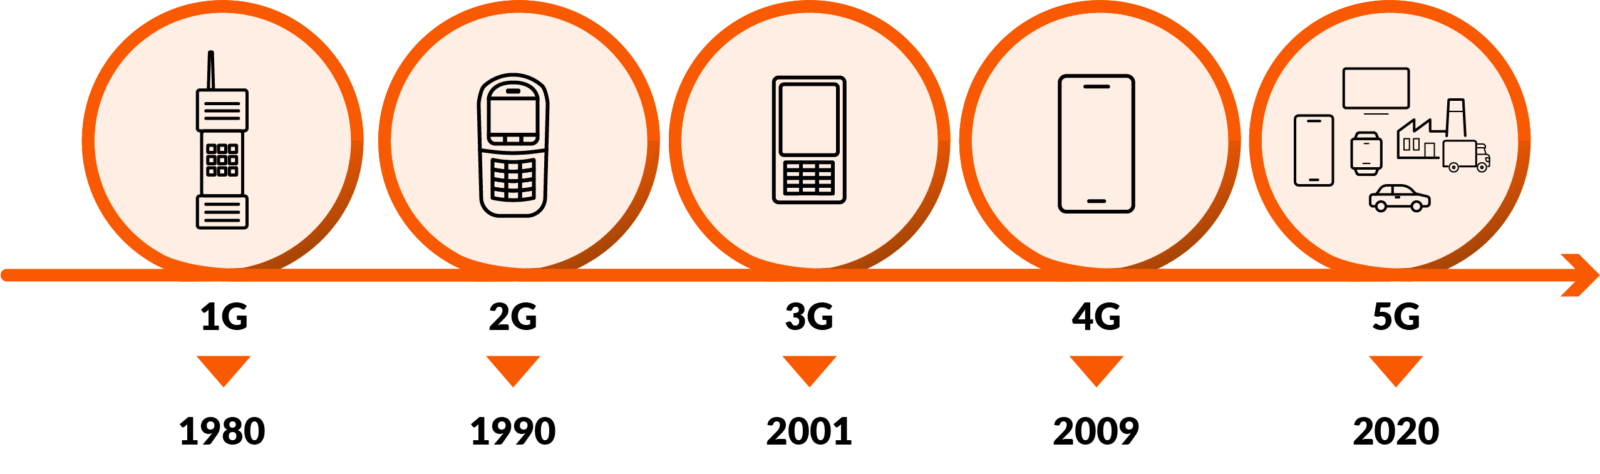 udviklingen fra 1G til 5G